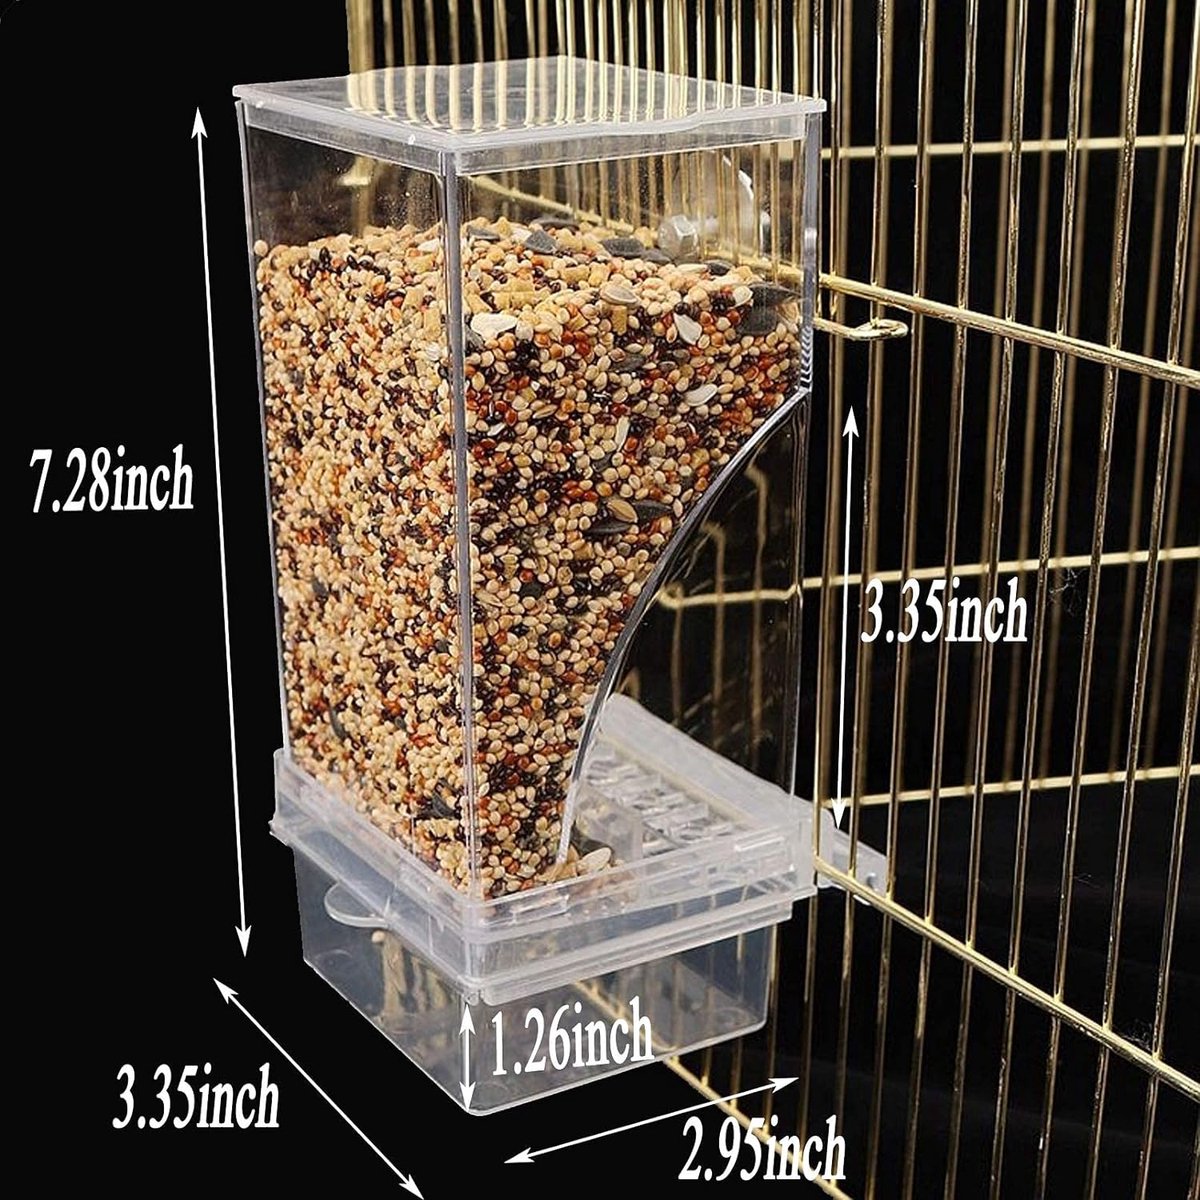 Mangeoire transparente en acrylique pour oiseaux avec cage à